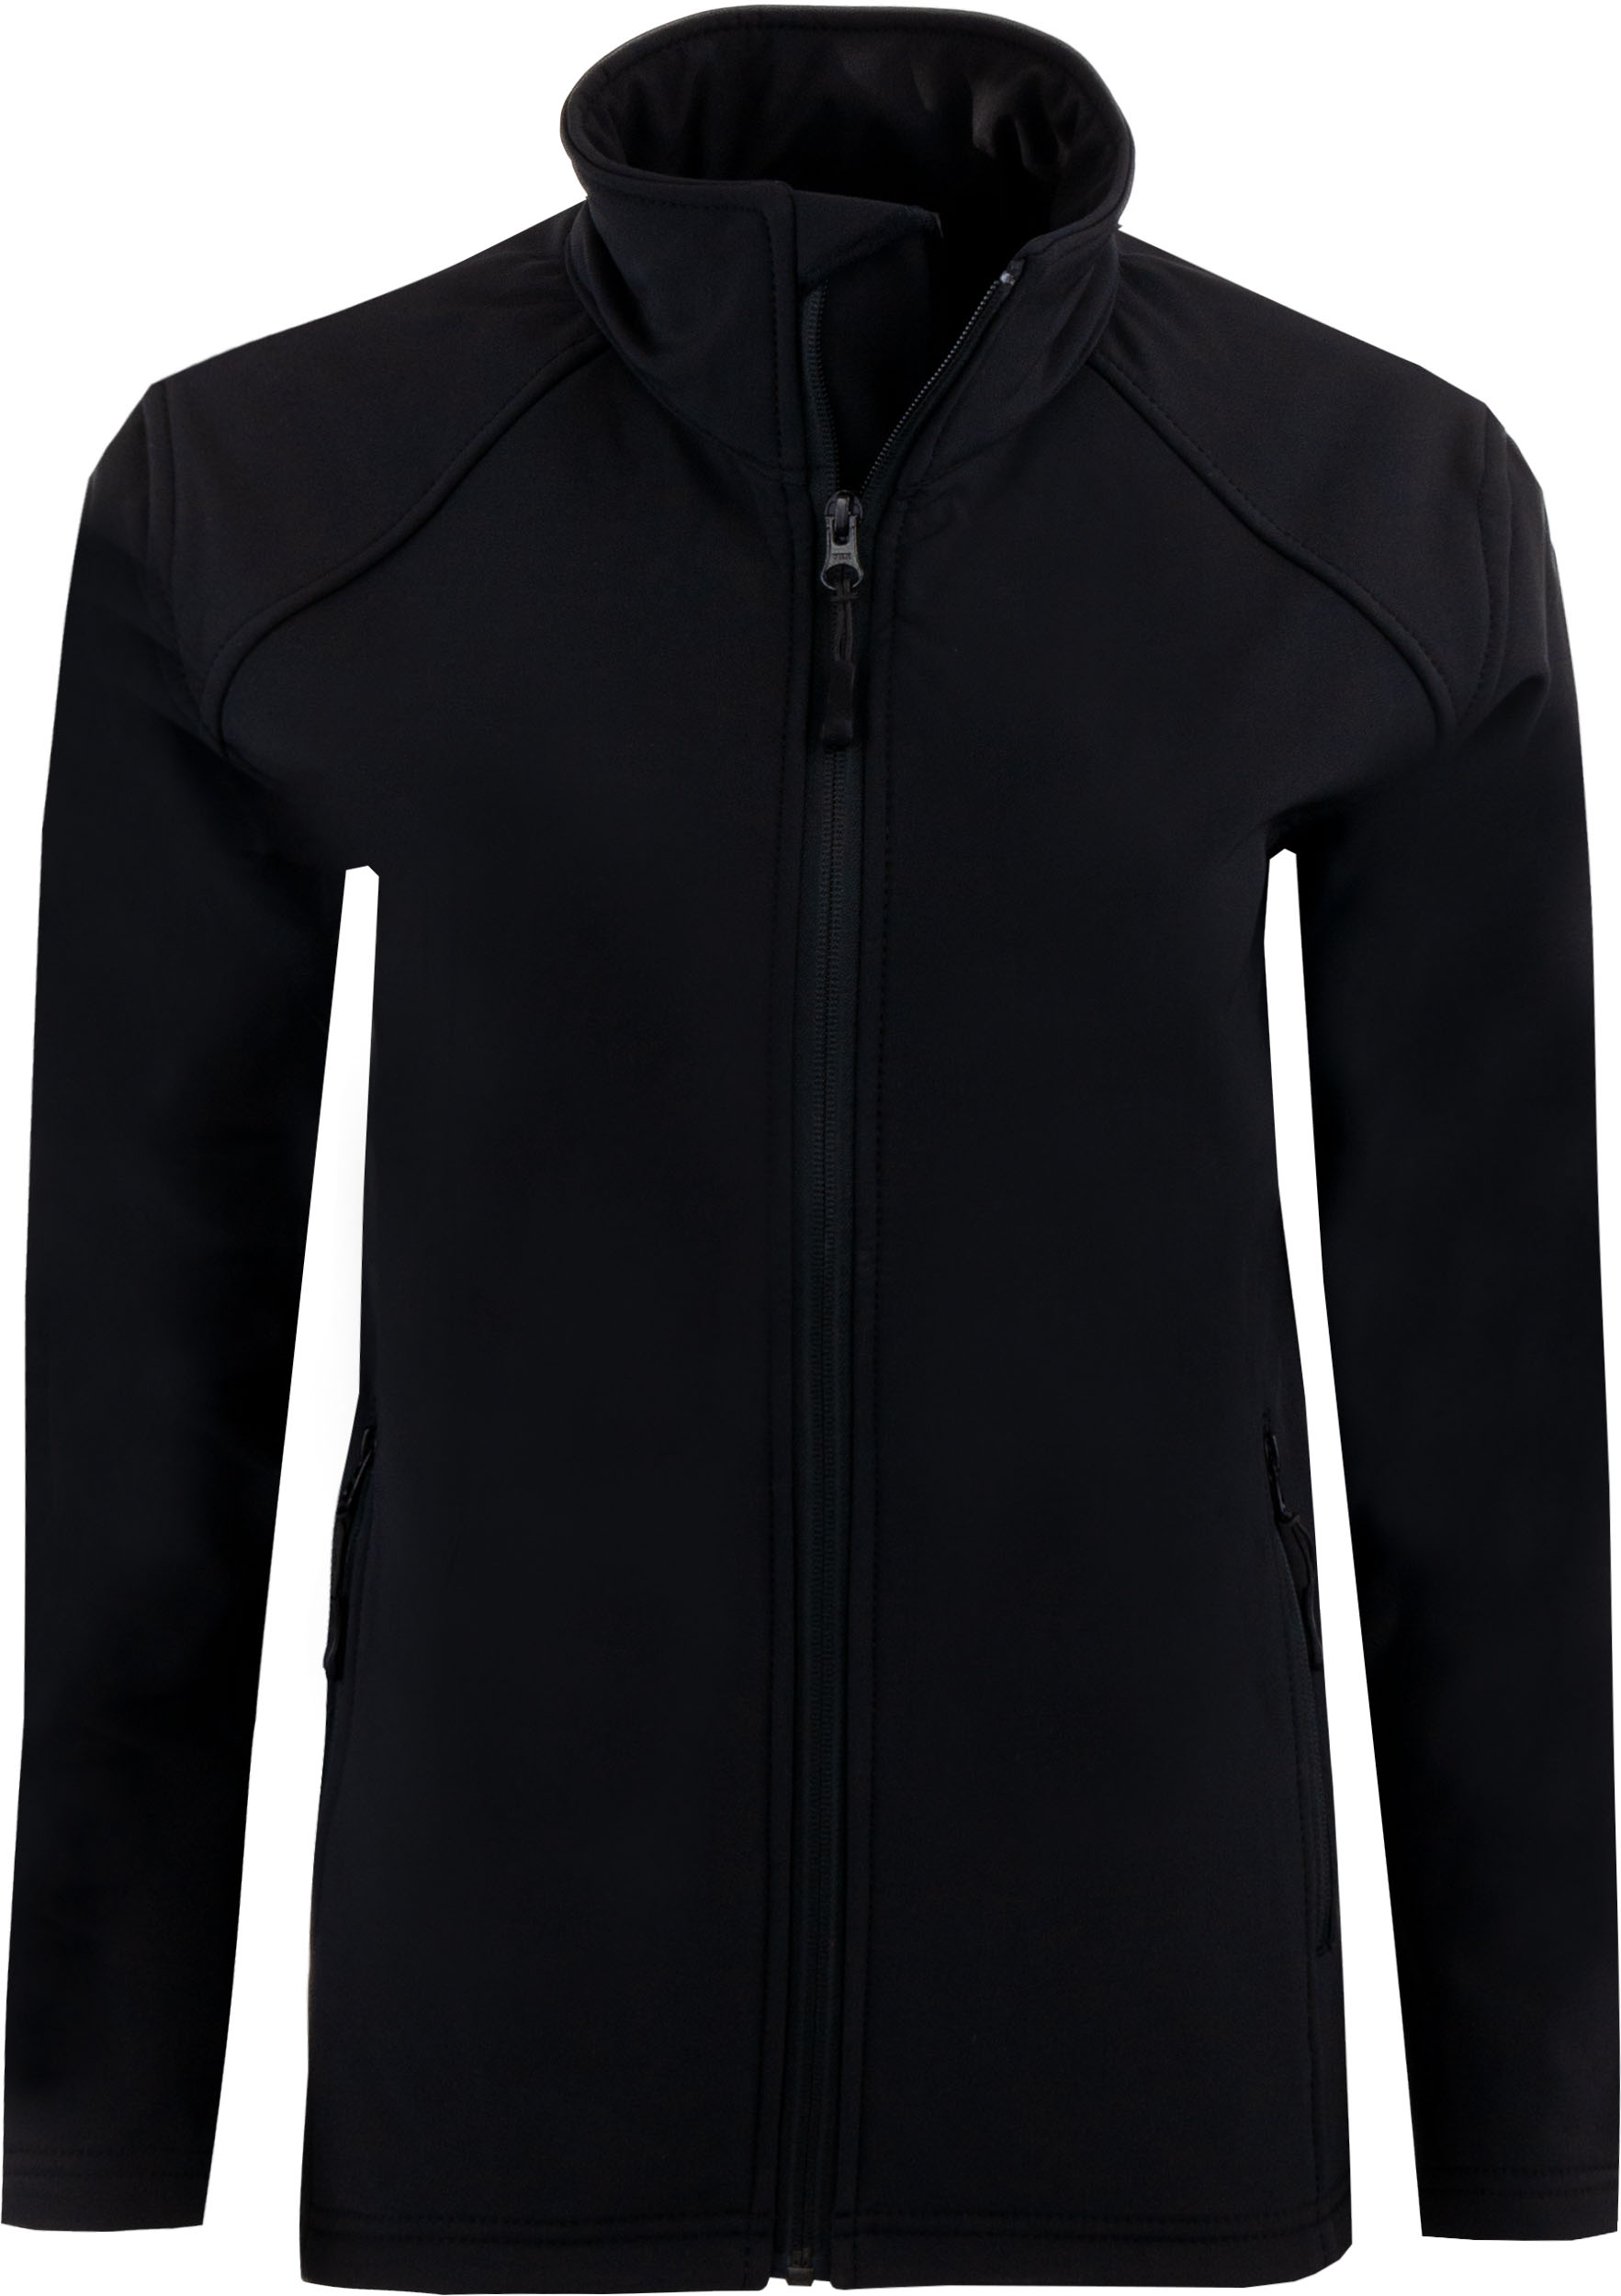 Dámská softshellová bunda Uniwear Black|XS